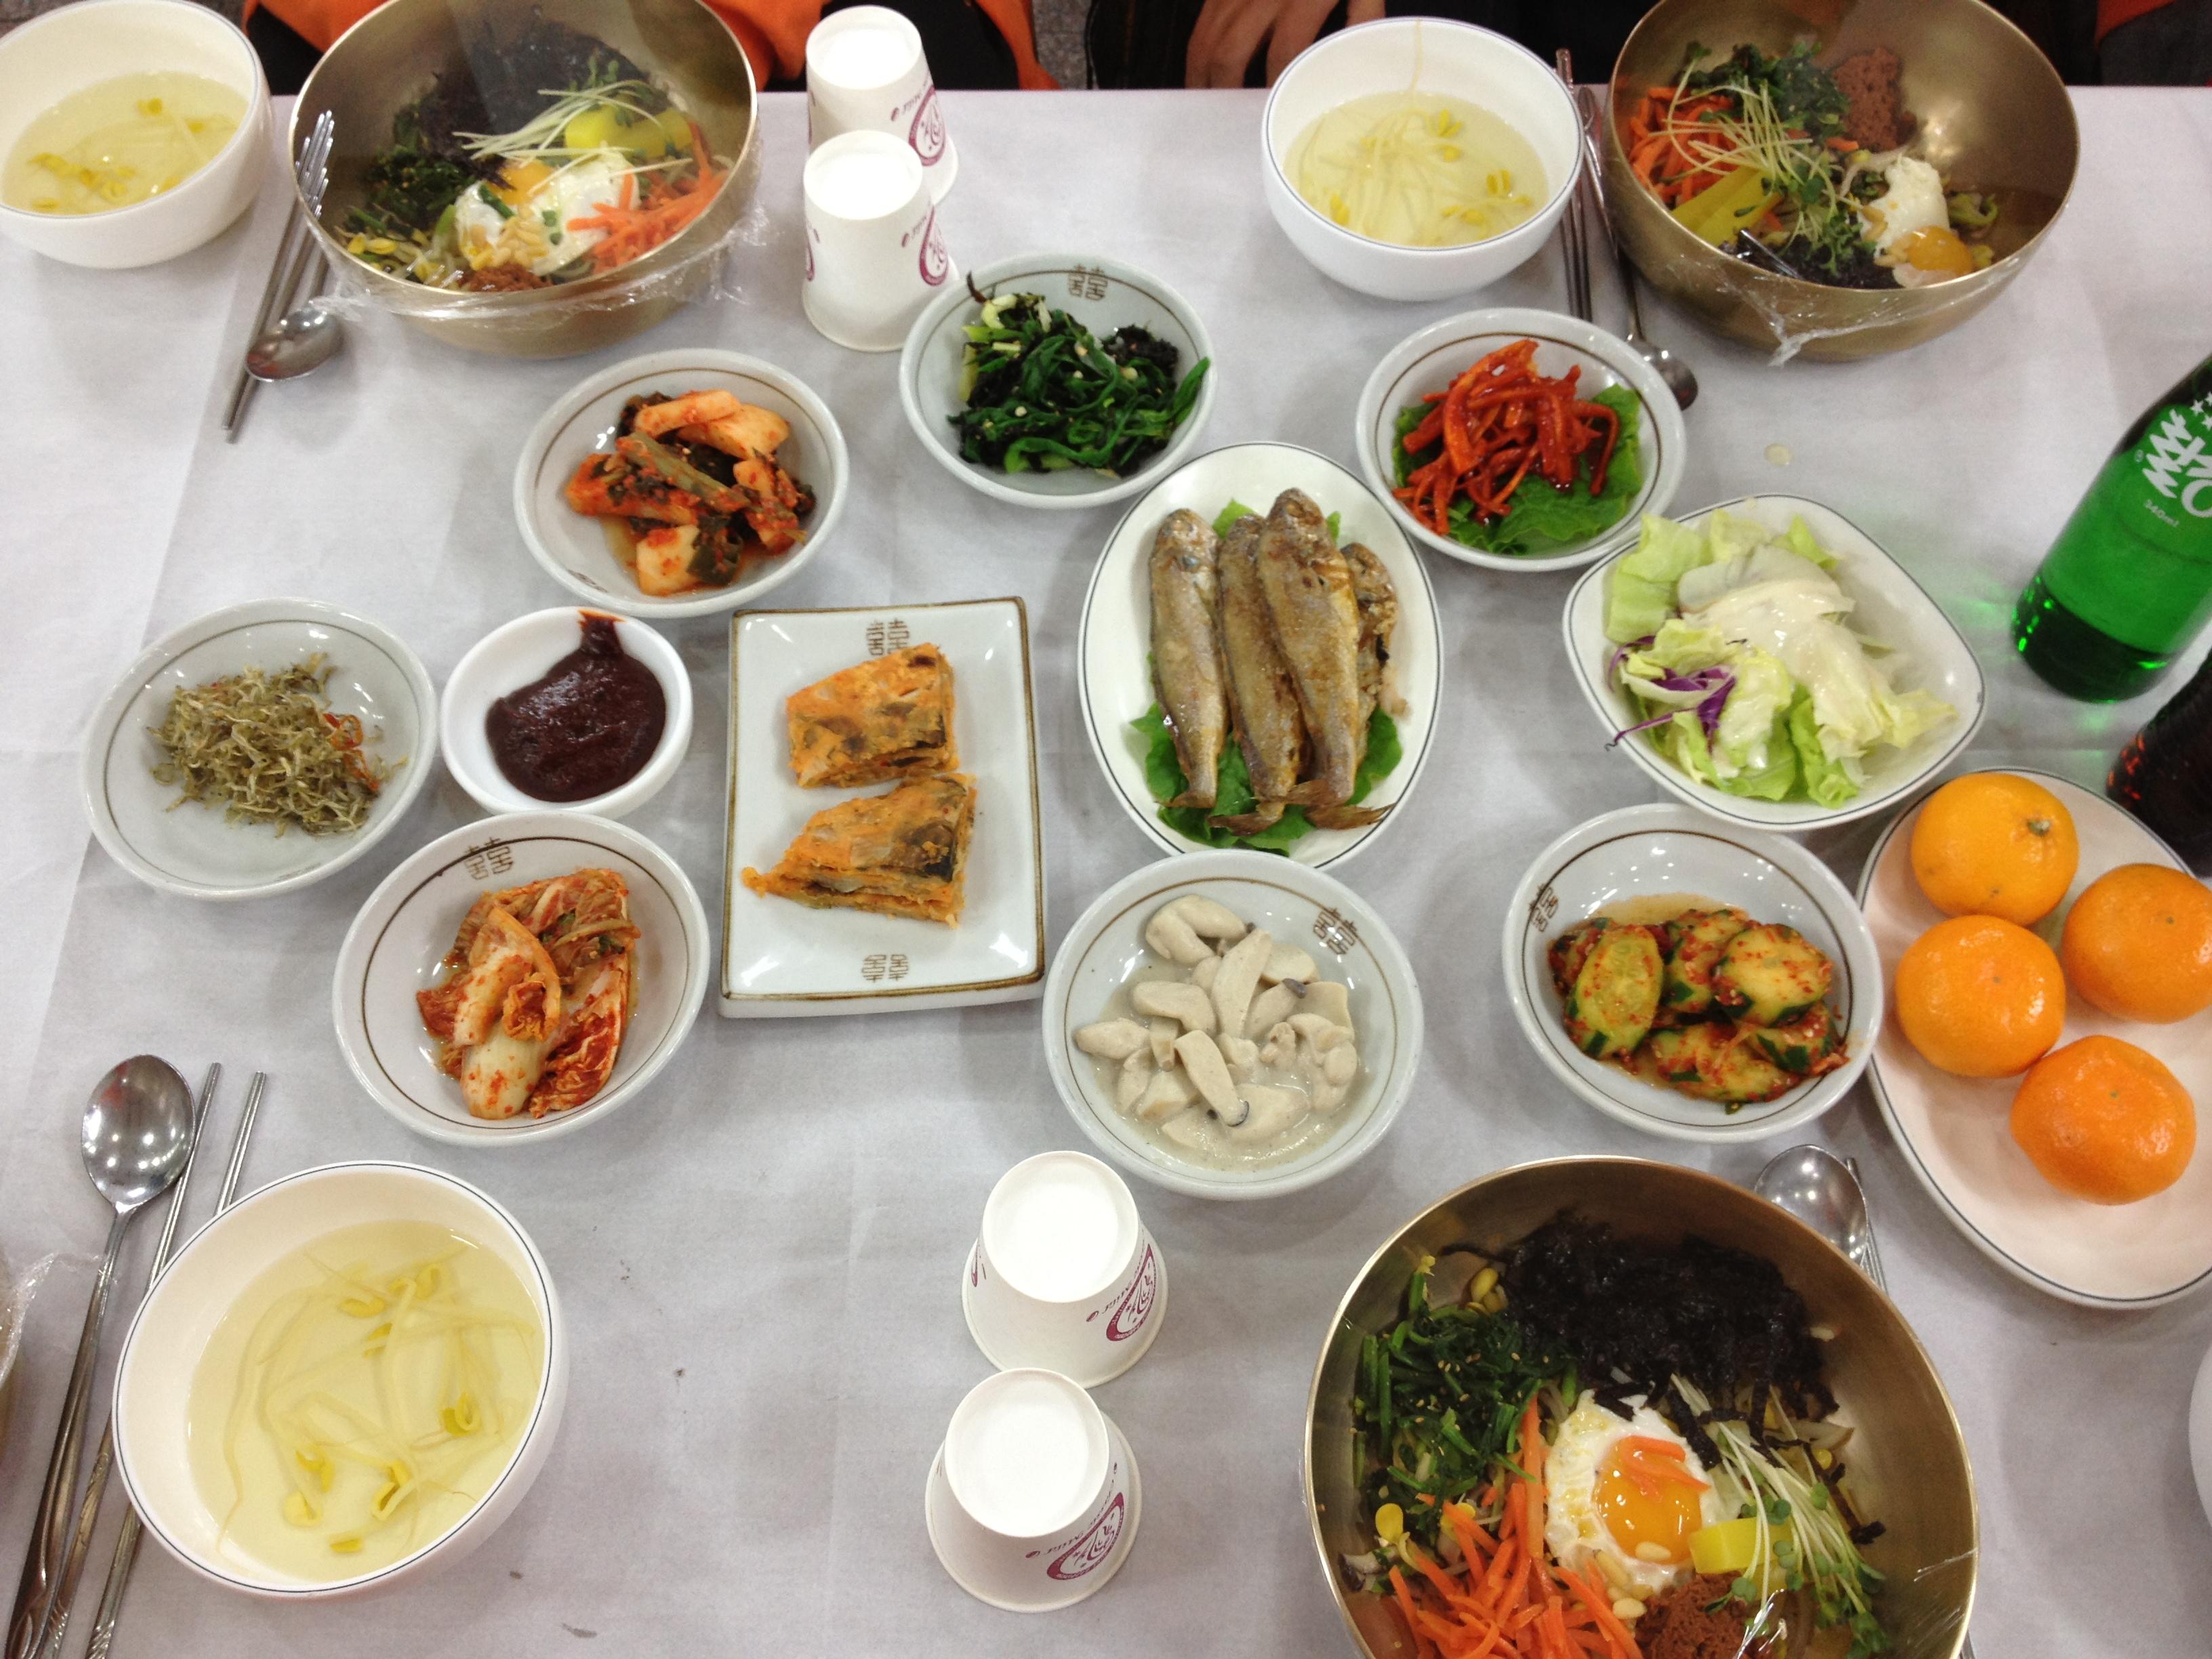 一桌料理饭店_韩国自由行_韩国旅游攻略_韩国景点美食 - 在首尔旅游网